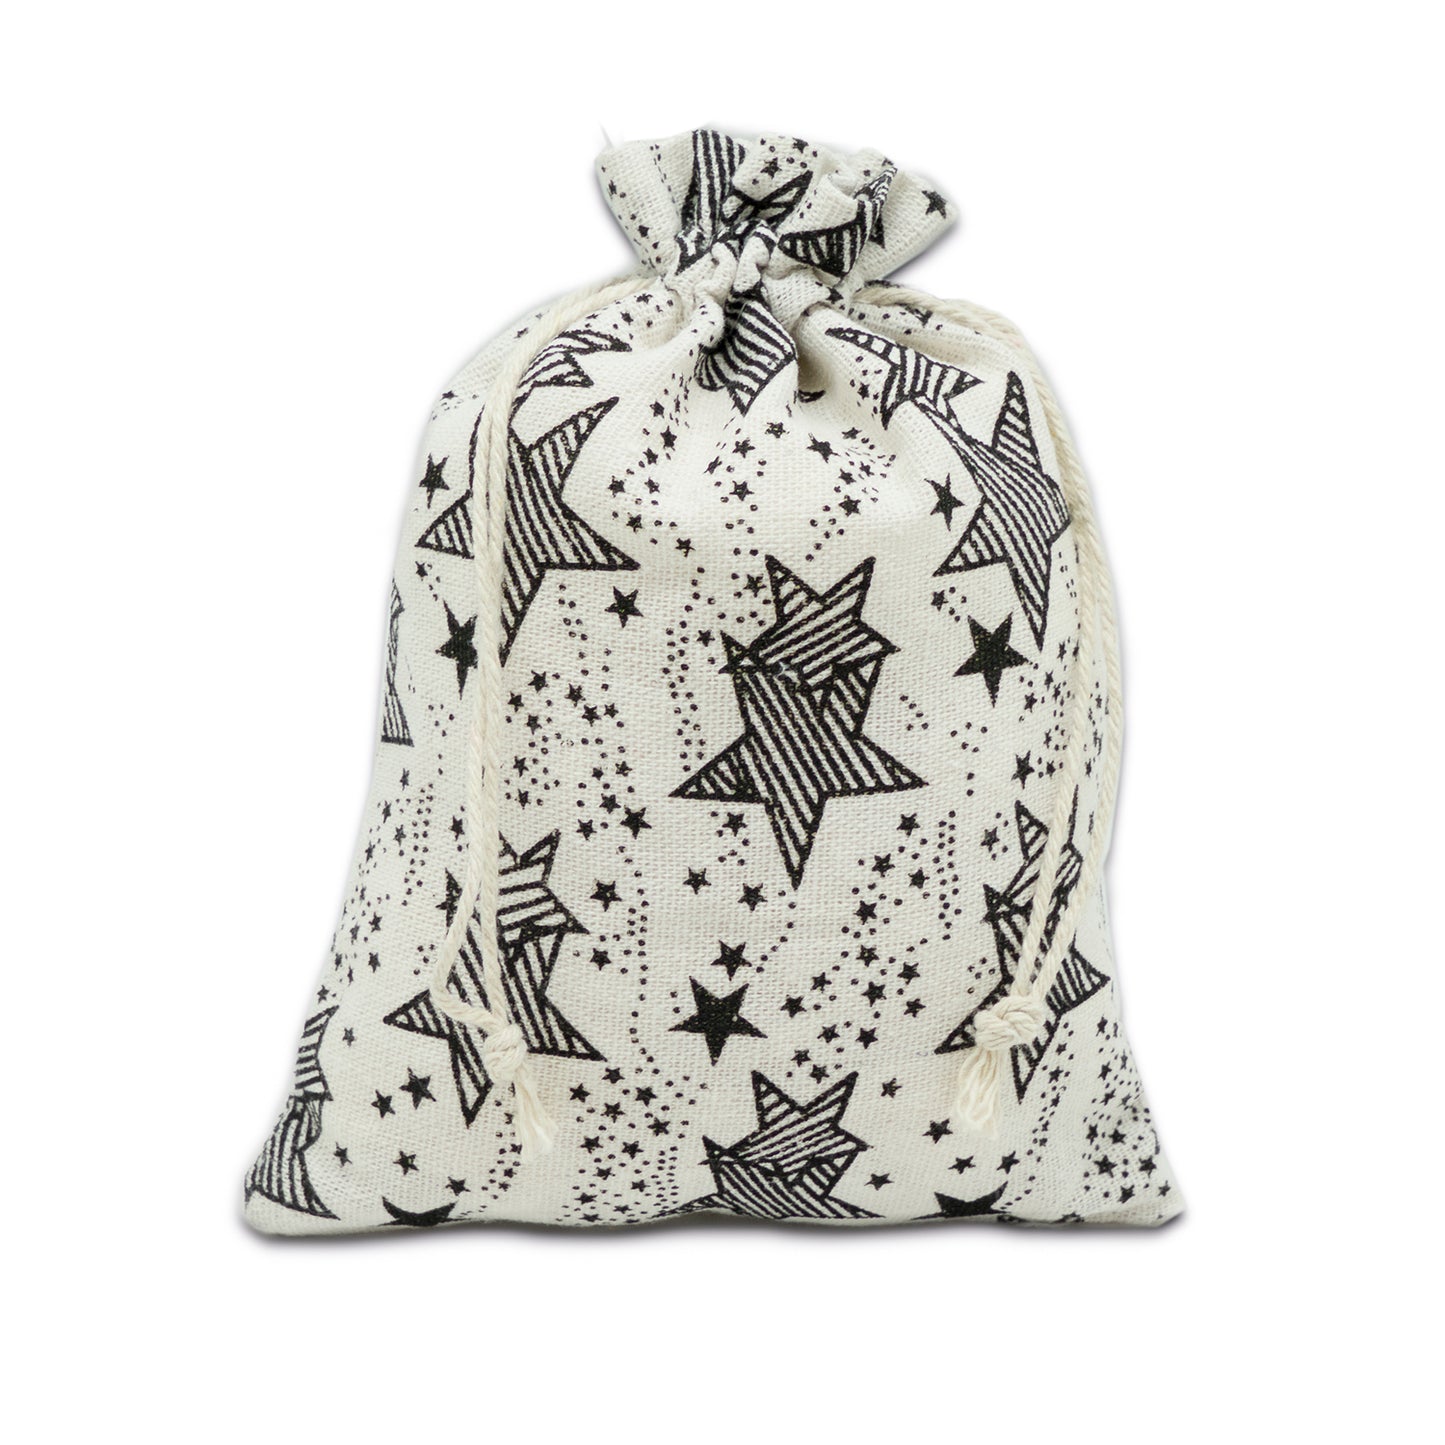 6" x 8" Cotton Muslin Black Star Drawstring Gift Bags